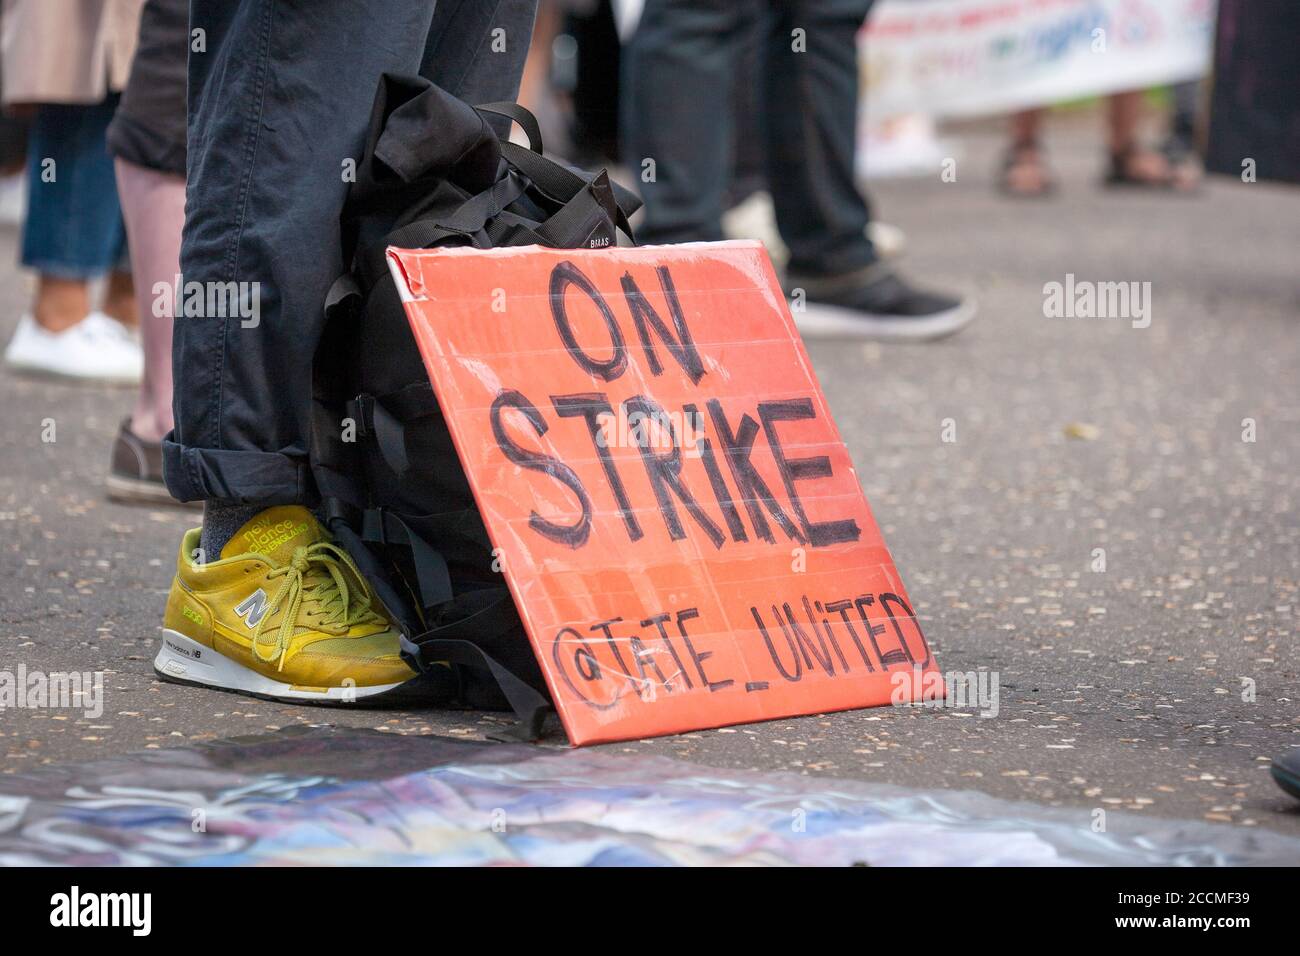 Bannière « On Strike » au pied d'un manifestant à l'extérieur de Tate Modern. Banque D'Images